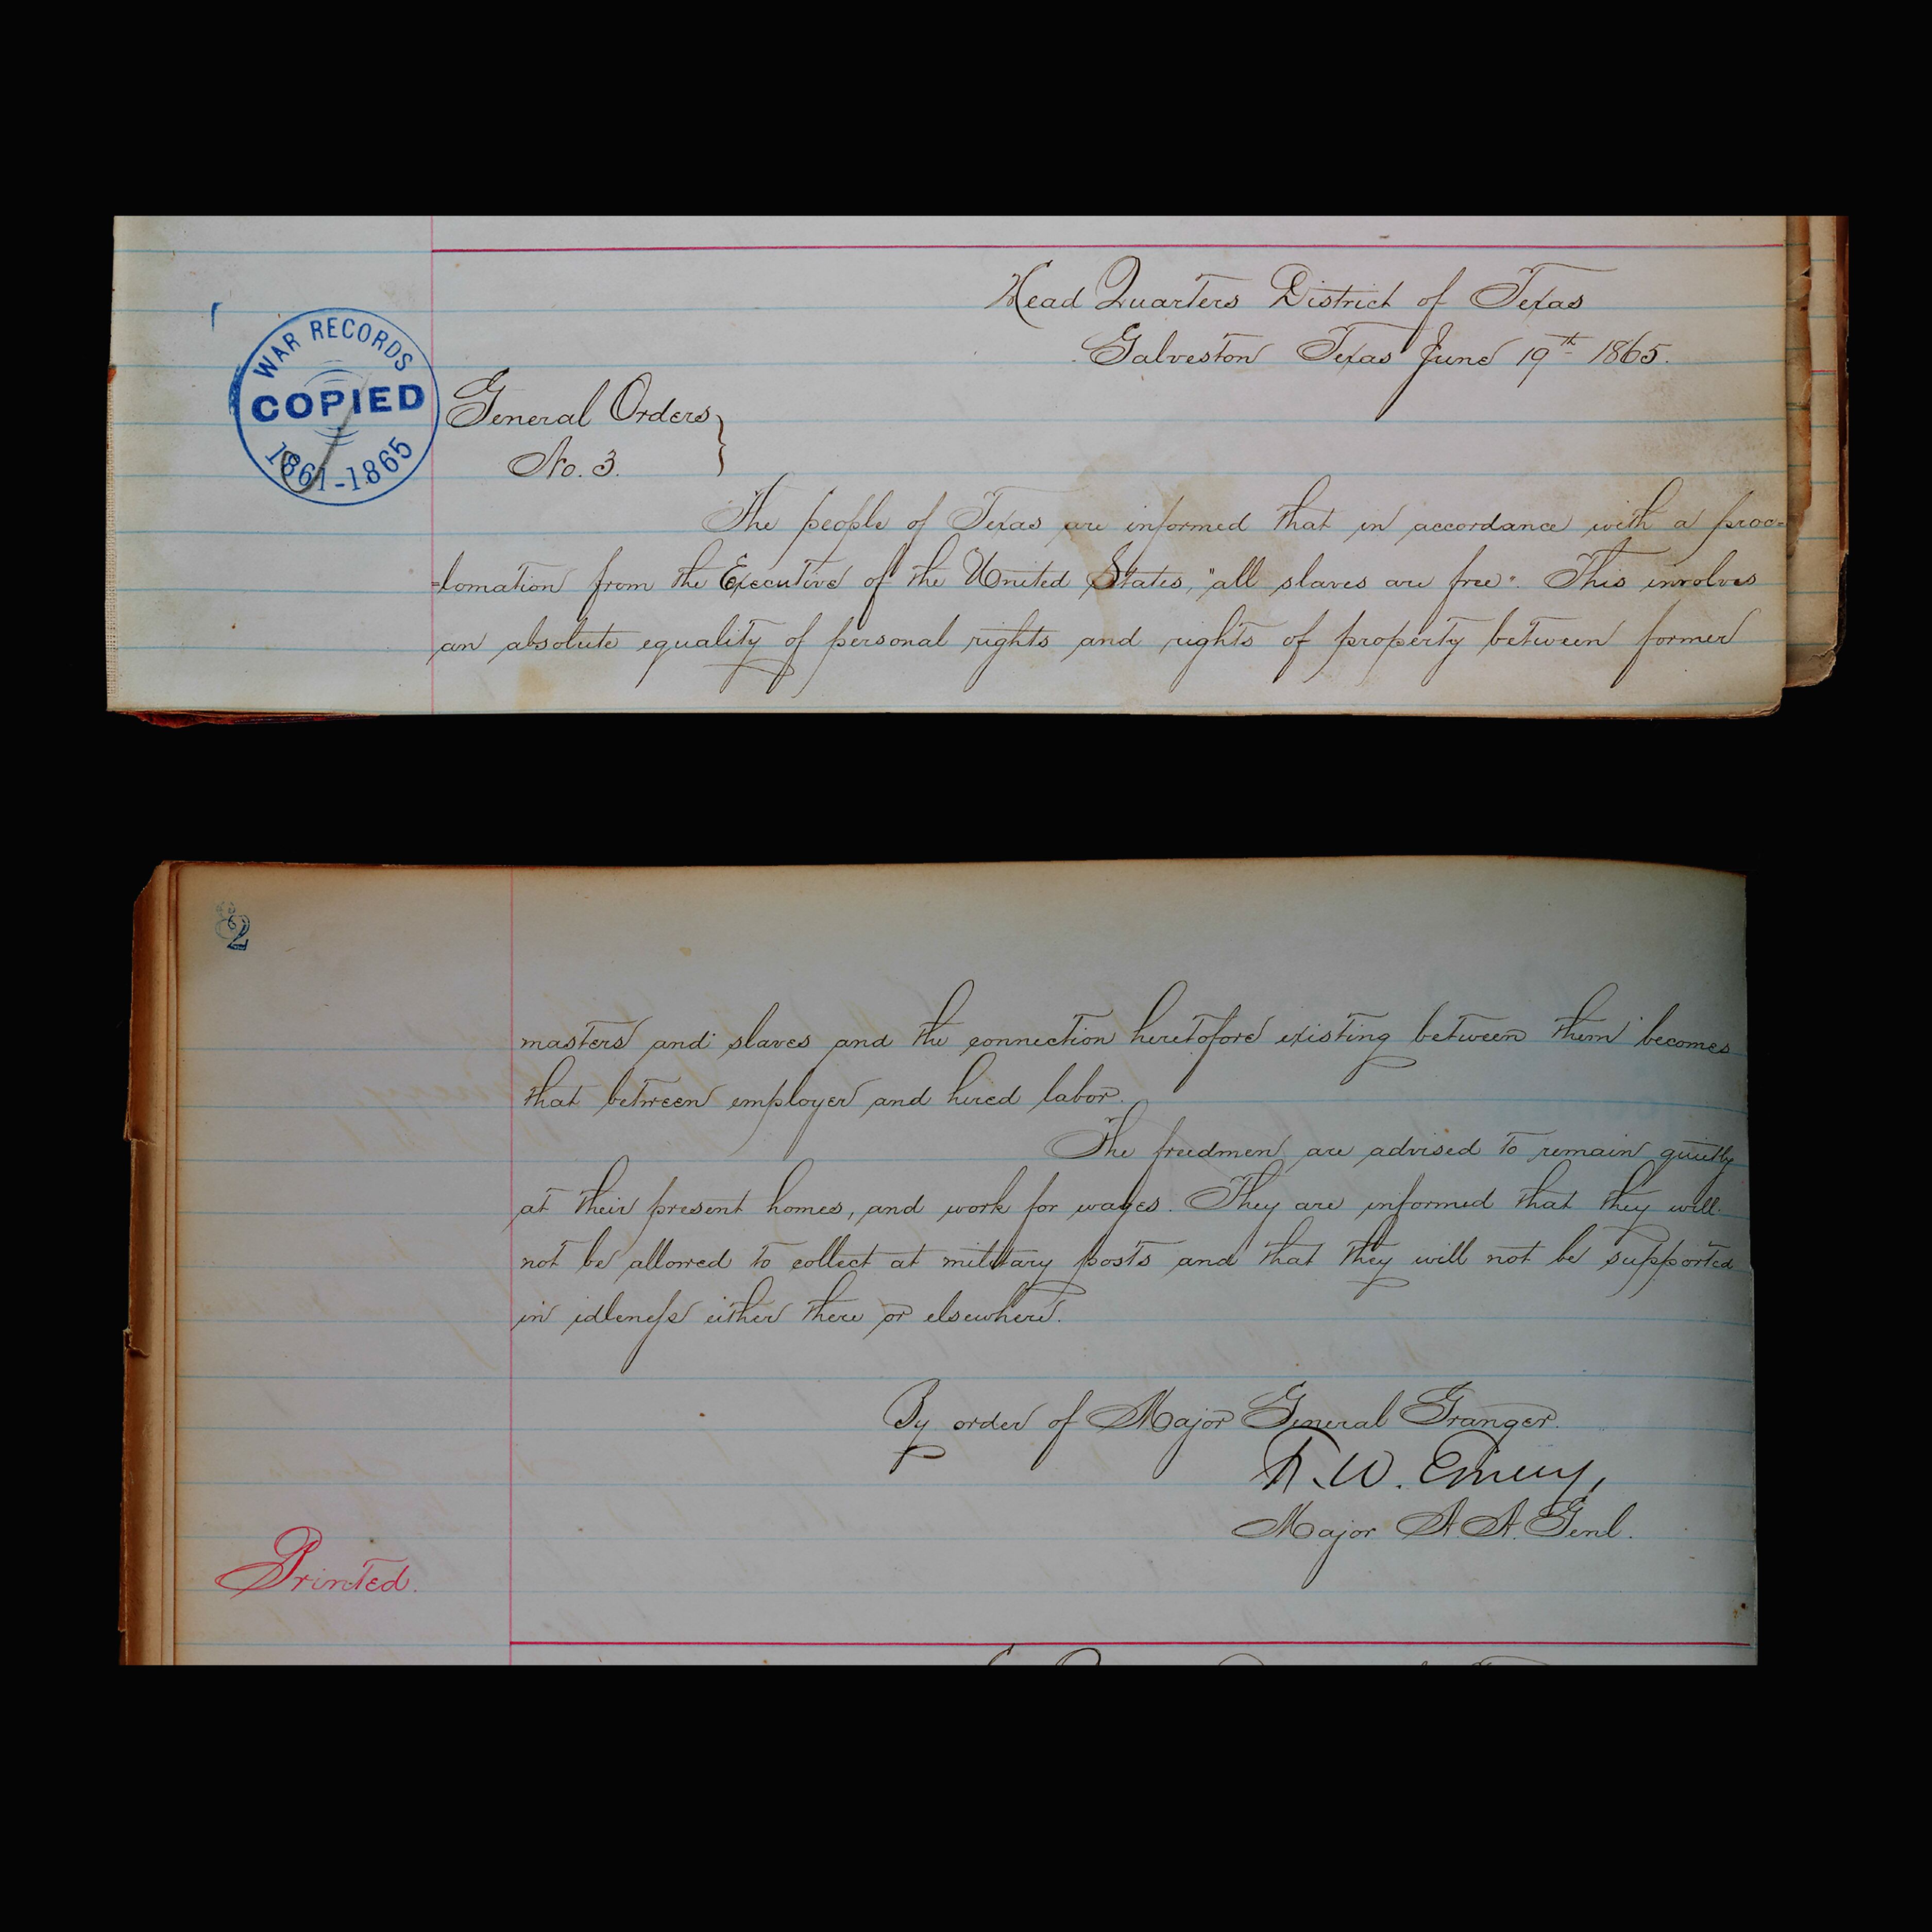 Un registro manuscrito que muestra la orden general n°3, emitida por el General de División de los Estados Unidos Gordon Granger, el 19 de junio de 1865. 